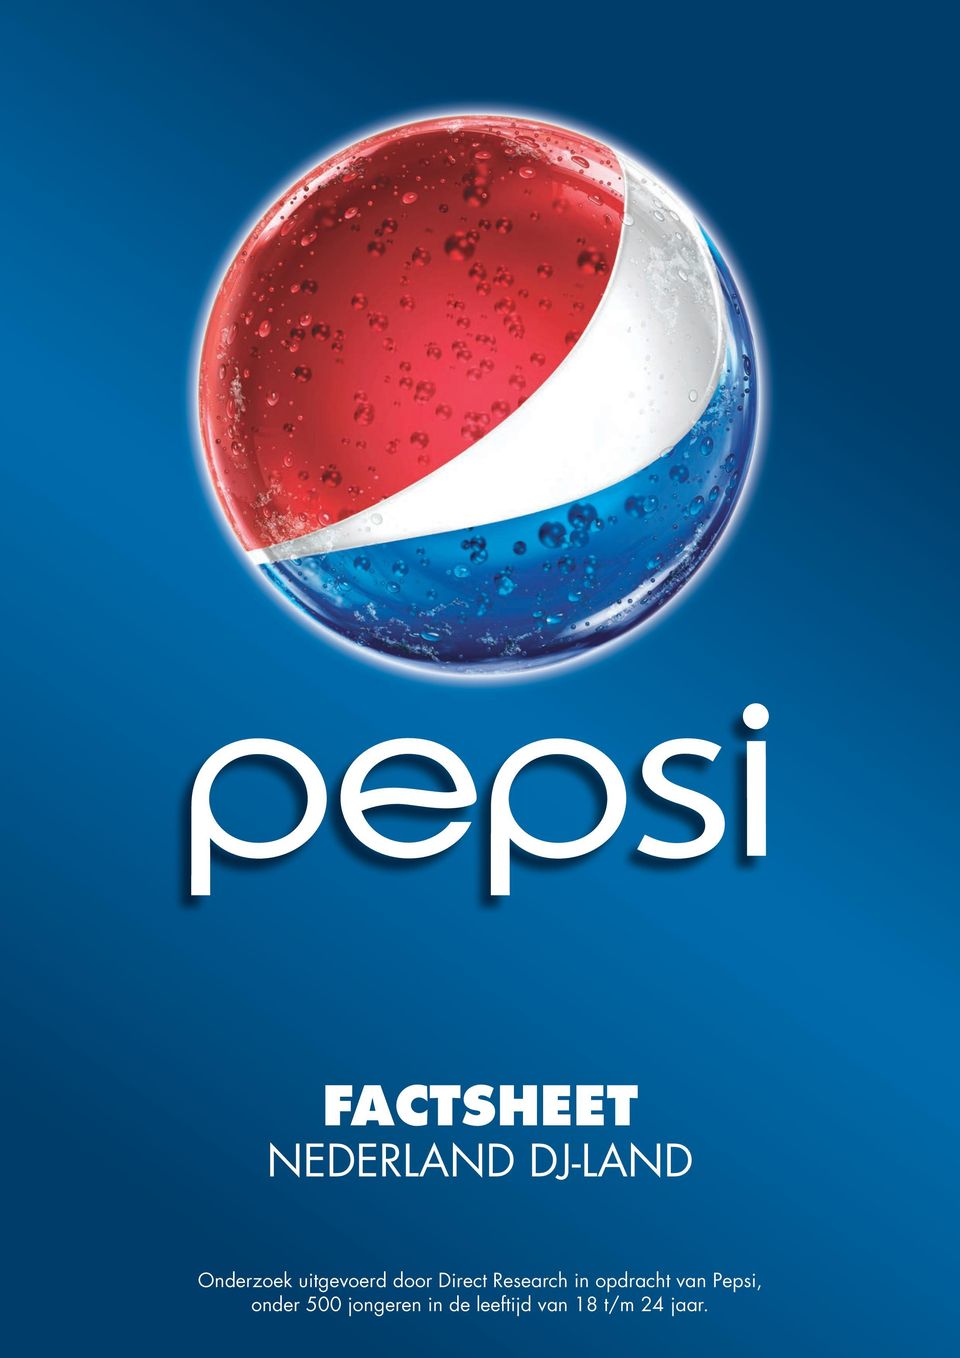 Research in opdracht van Pepsi,